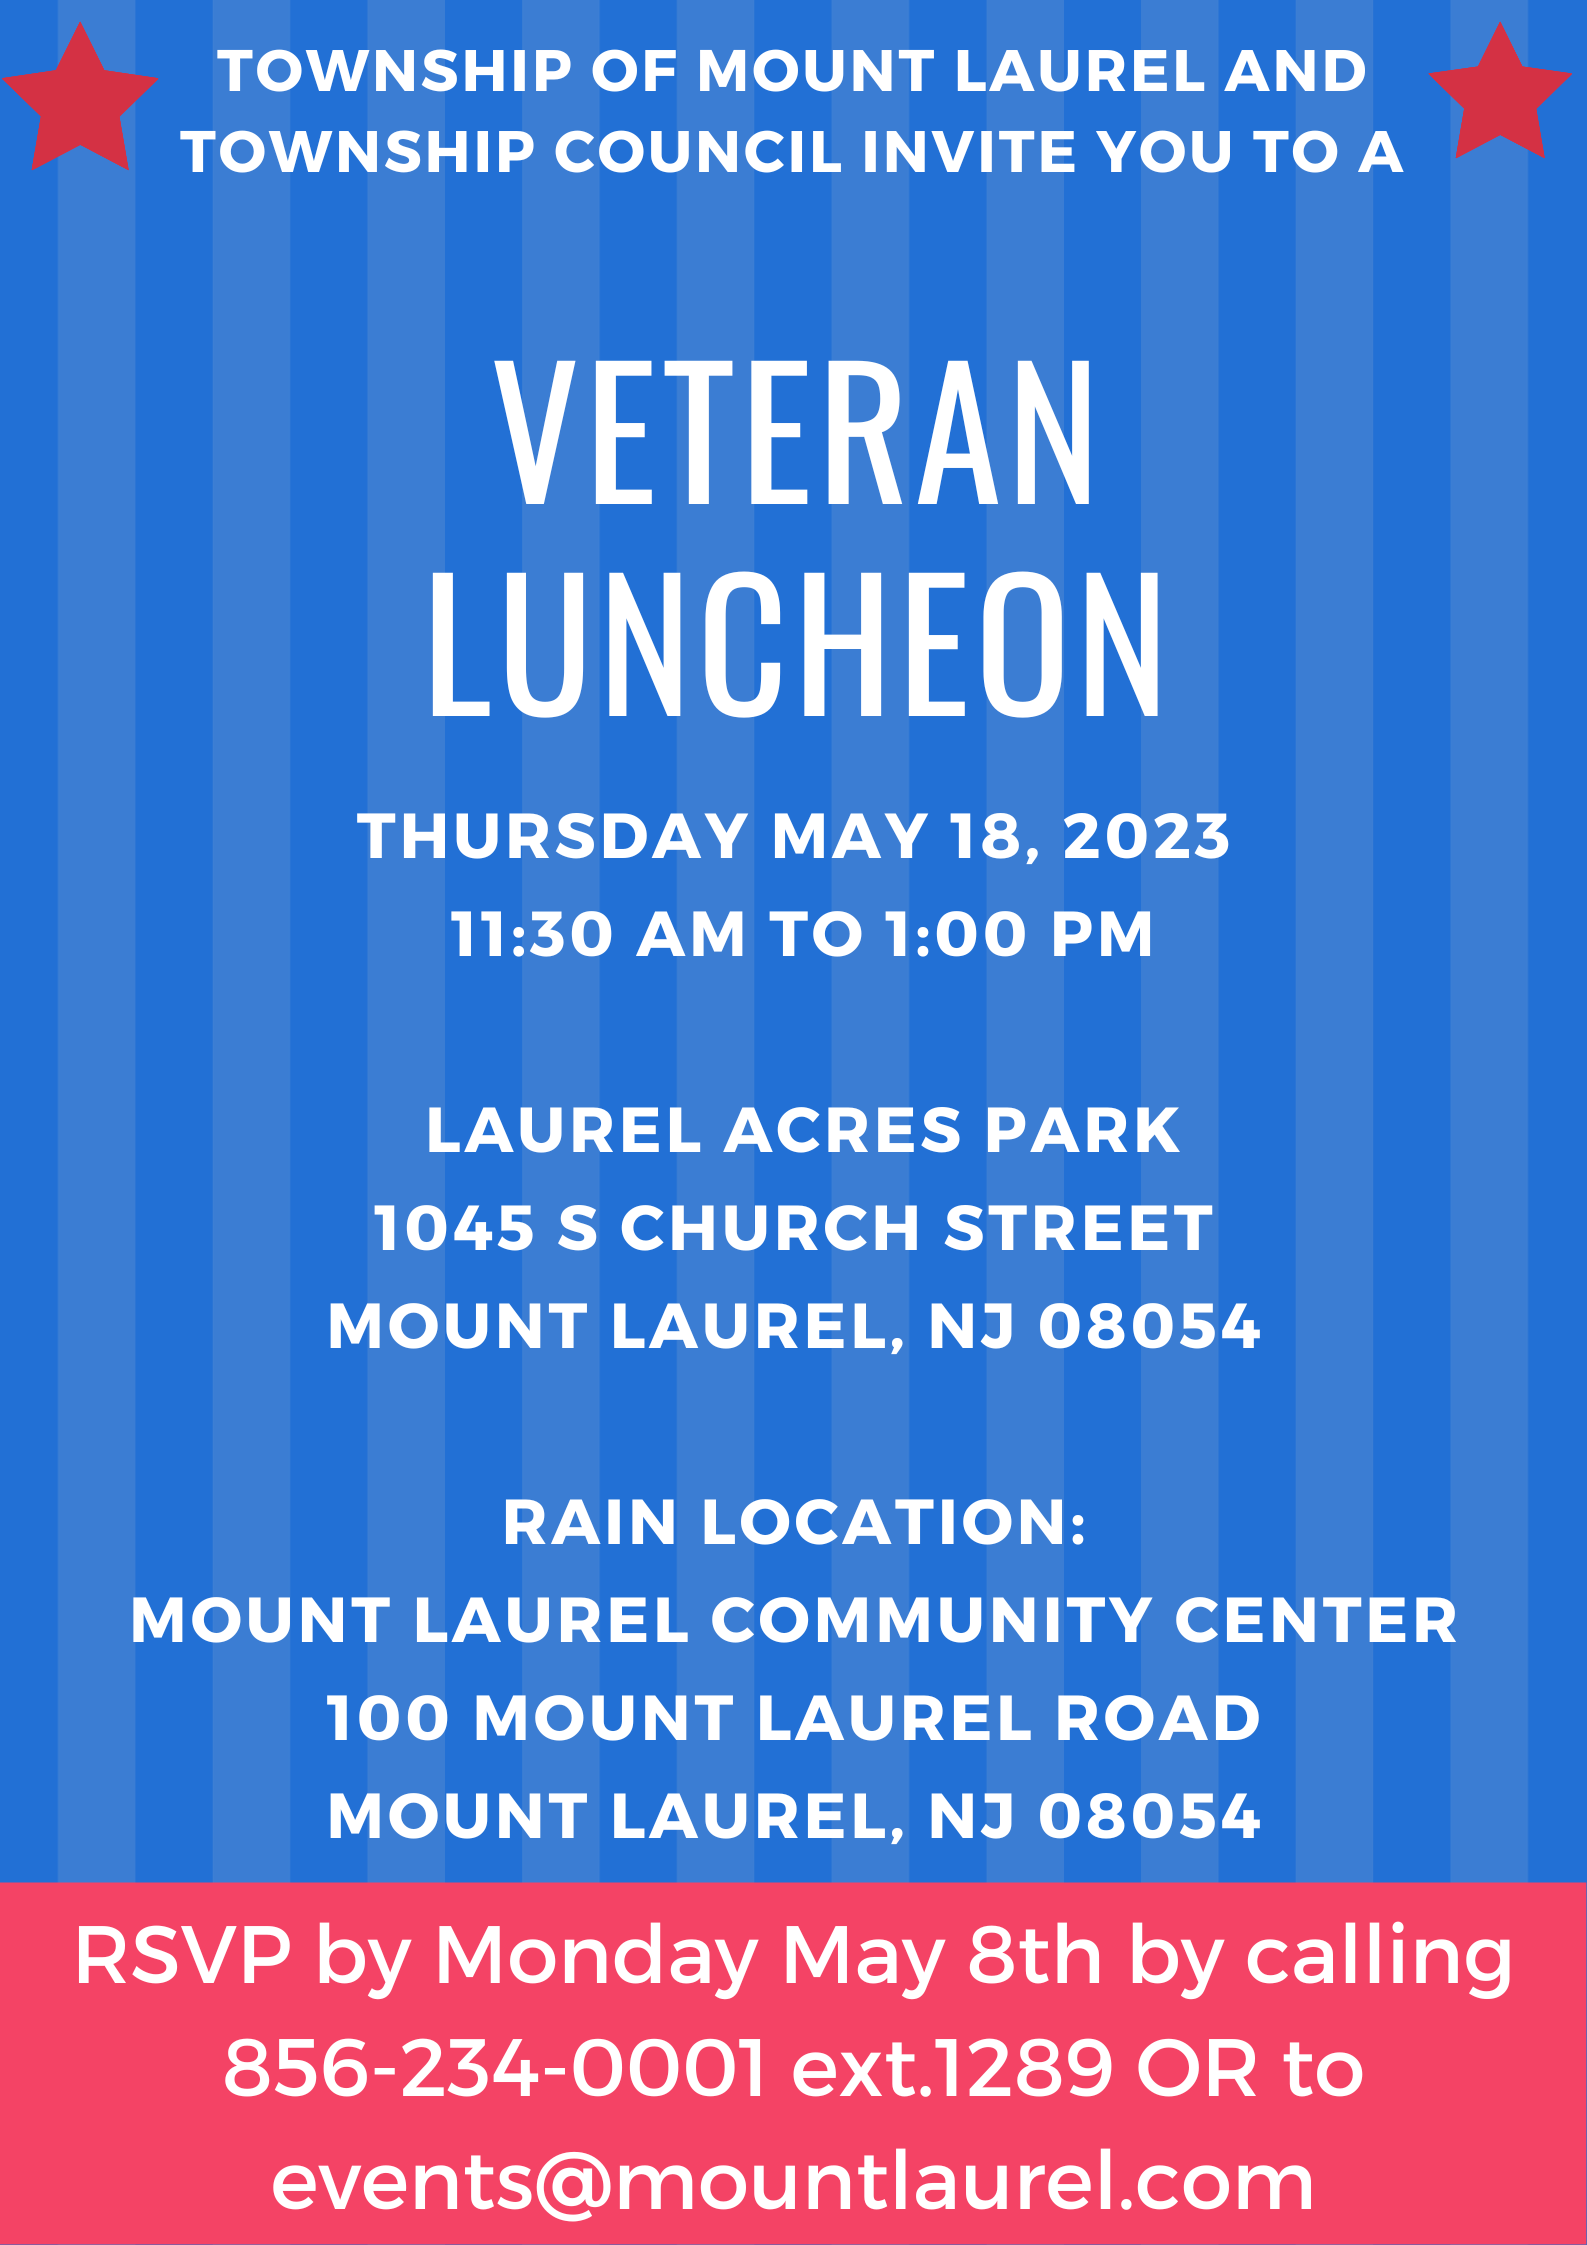 Veteran luncheon 5.18.23 UPDATE